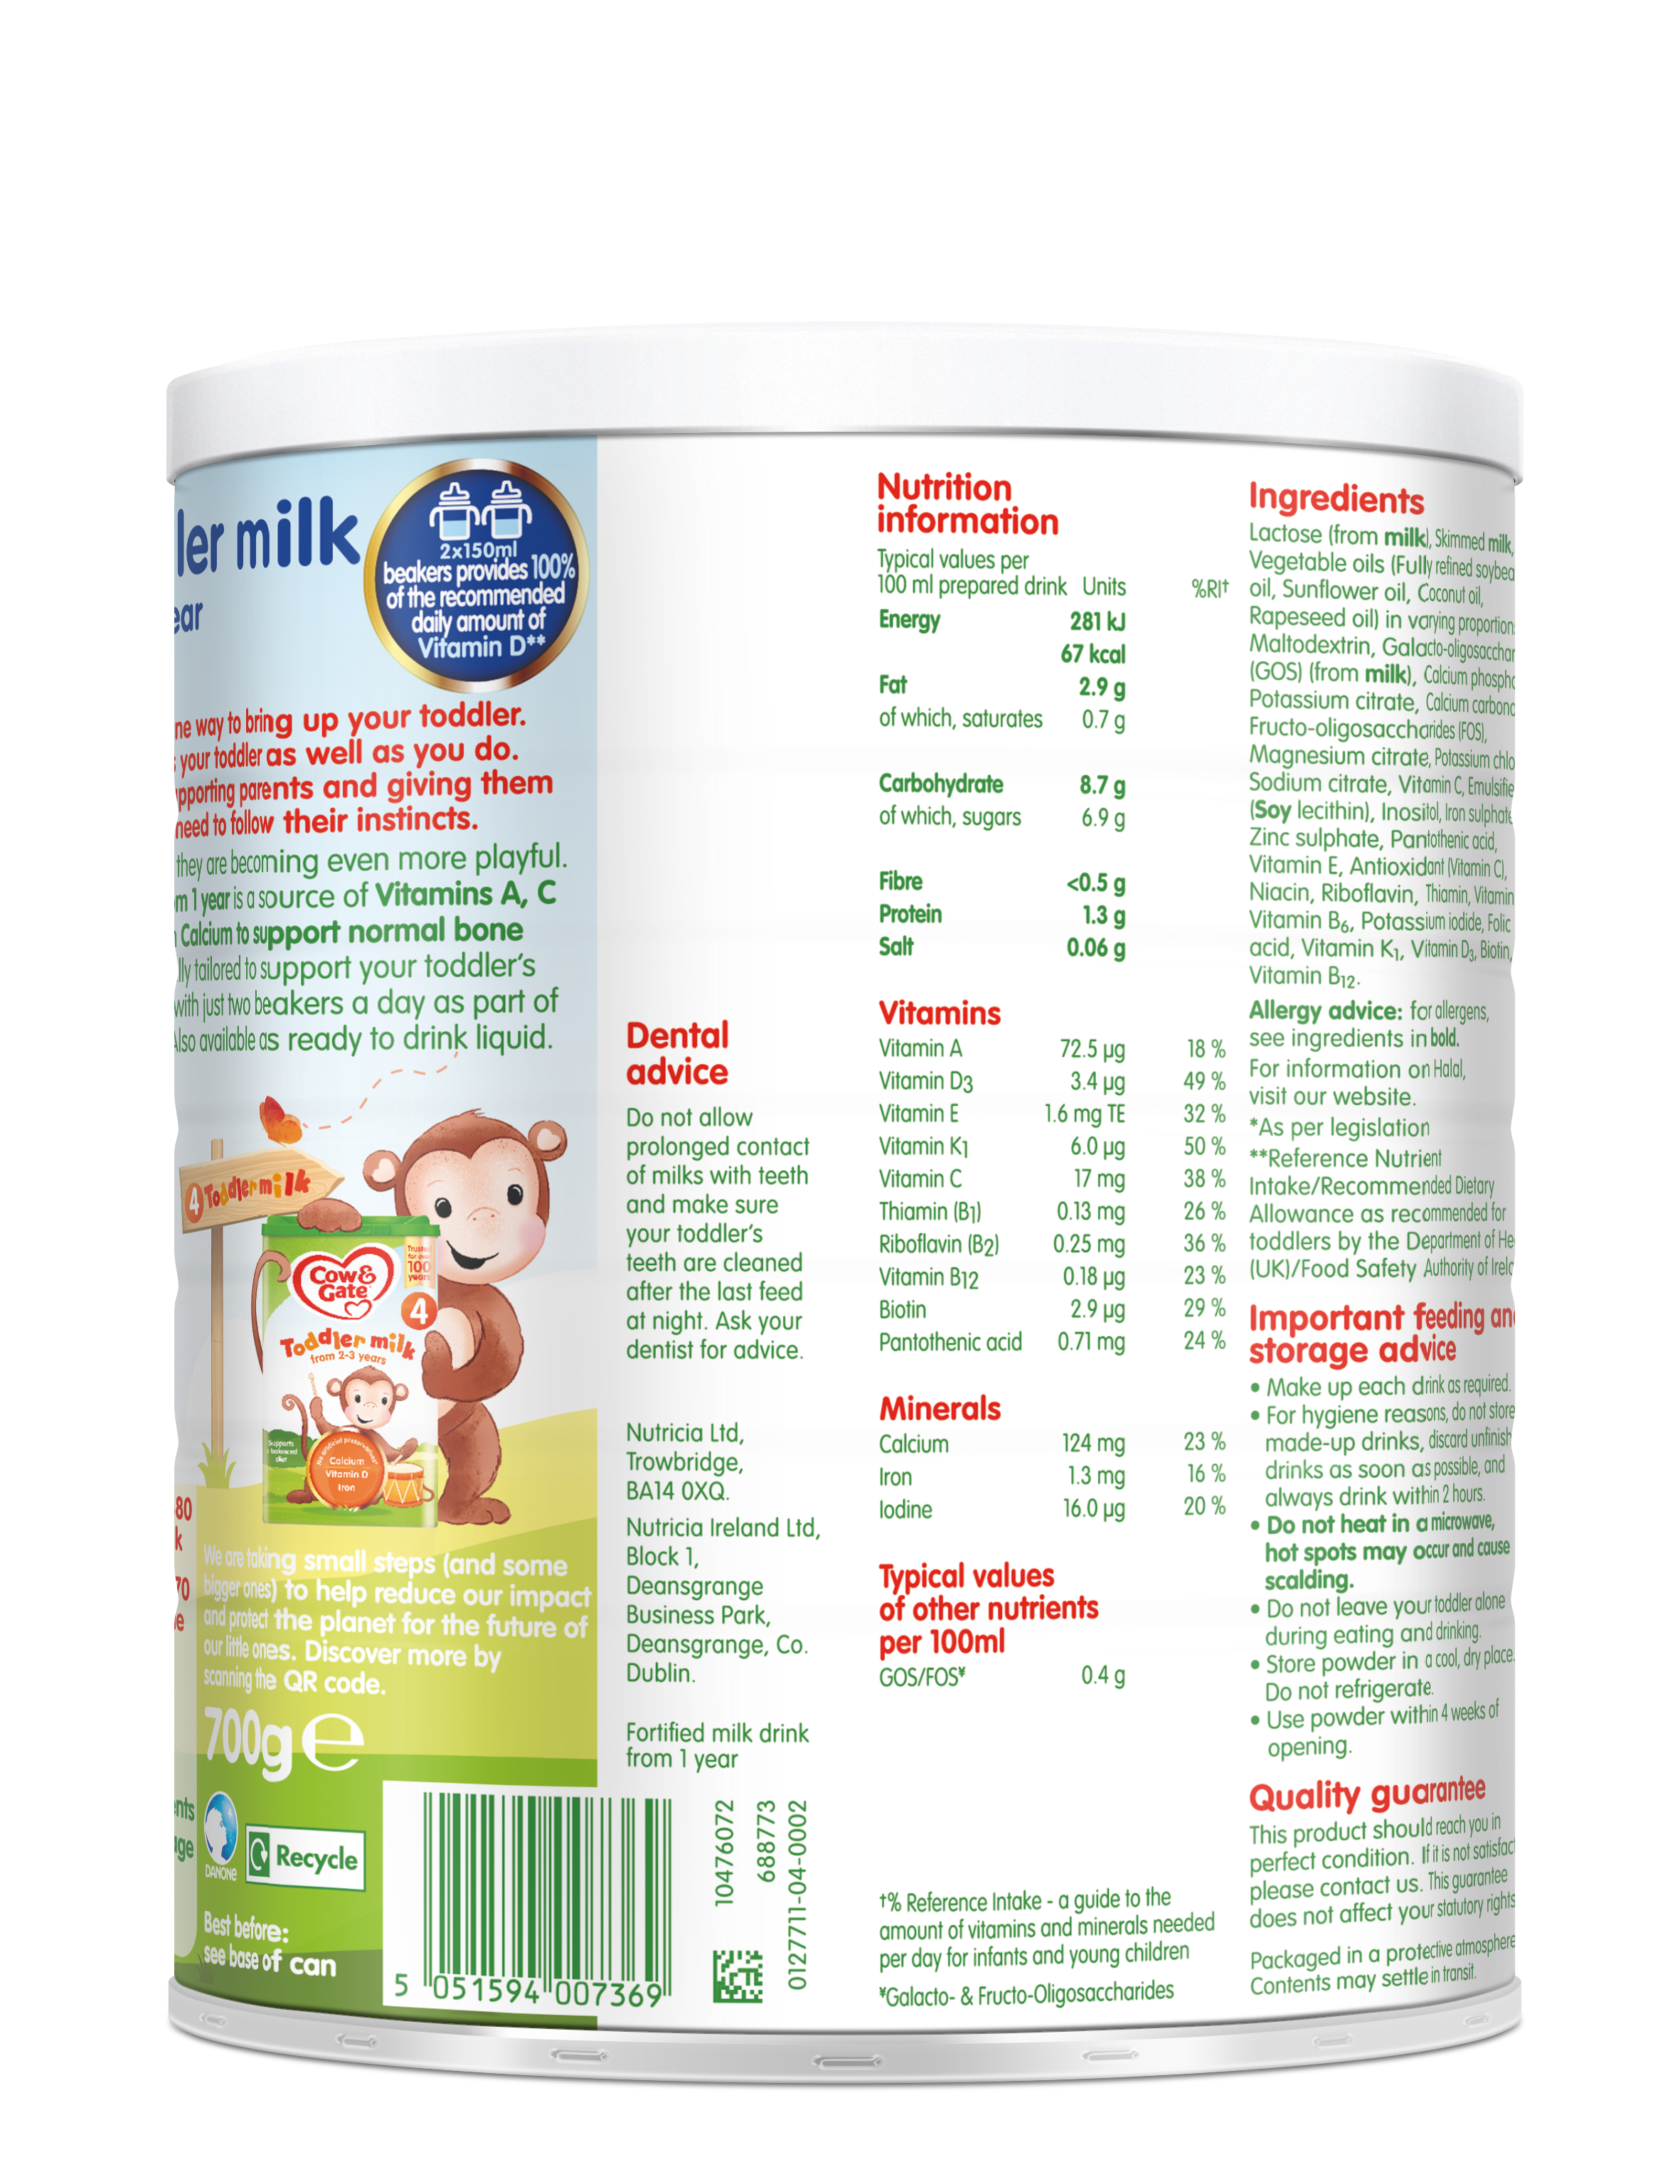 Cow & Gate Stage 3 Toddler Milk Powder 700g